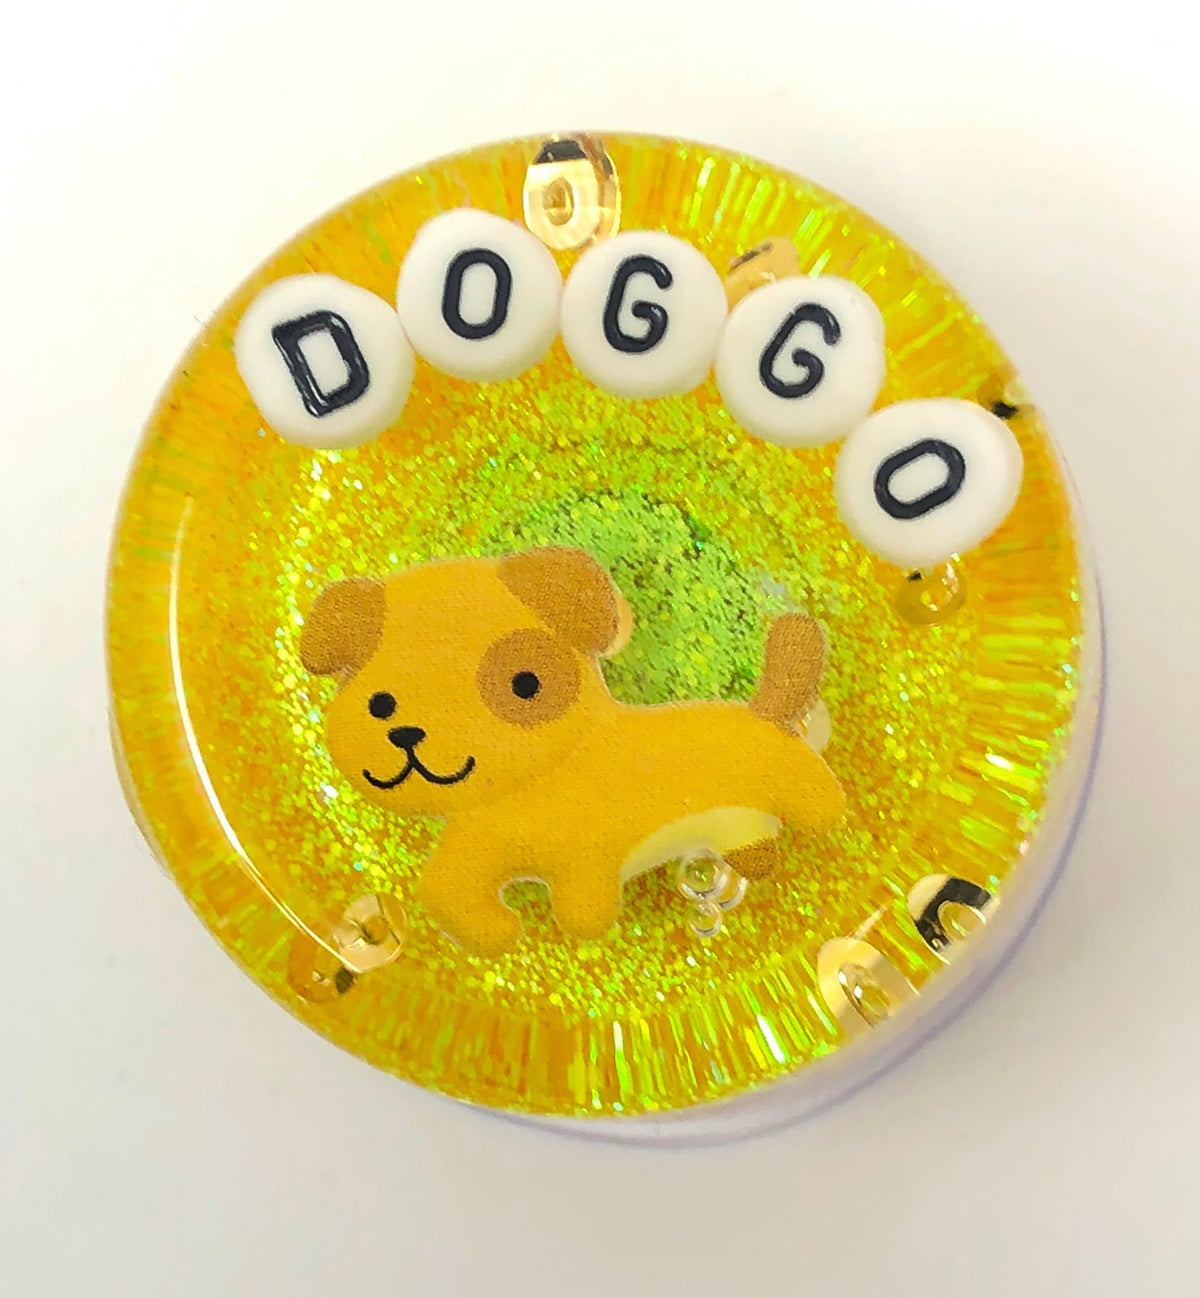 Doggo - Shower Art - READY TO SHIP